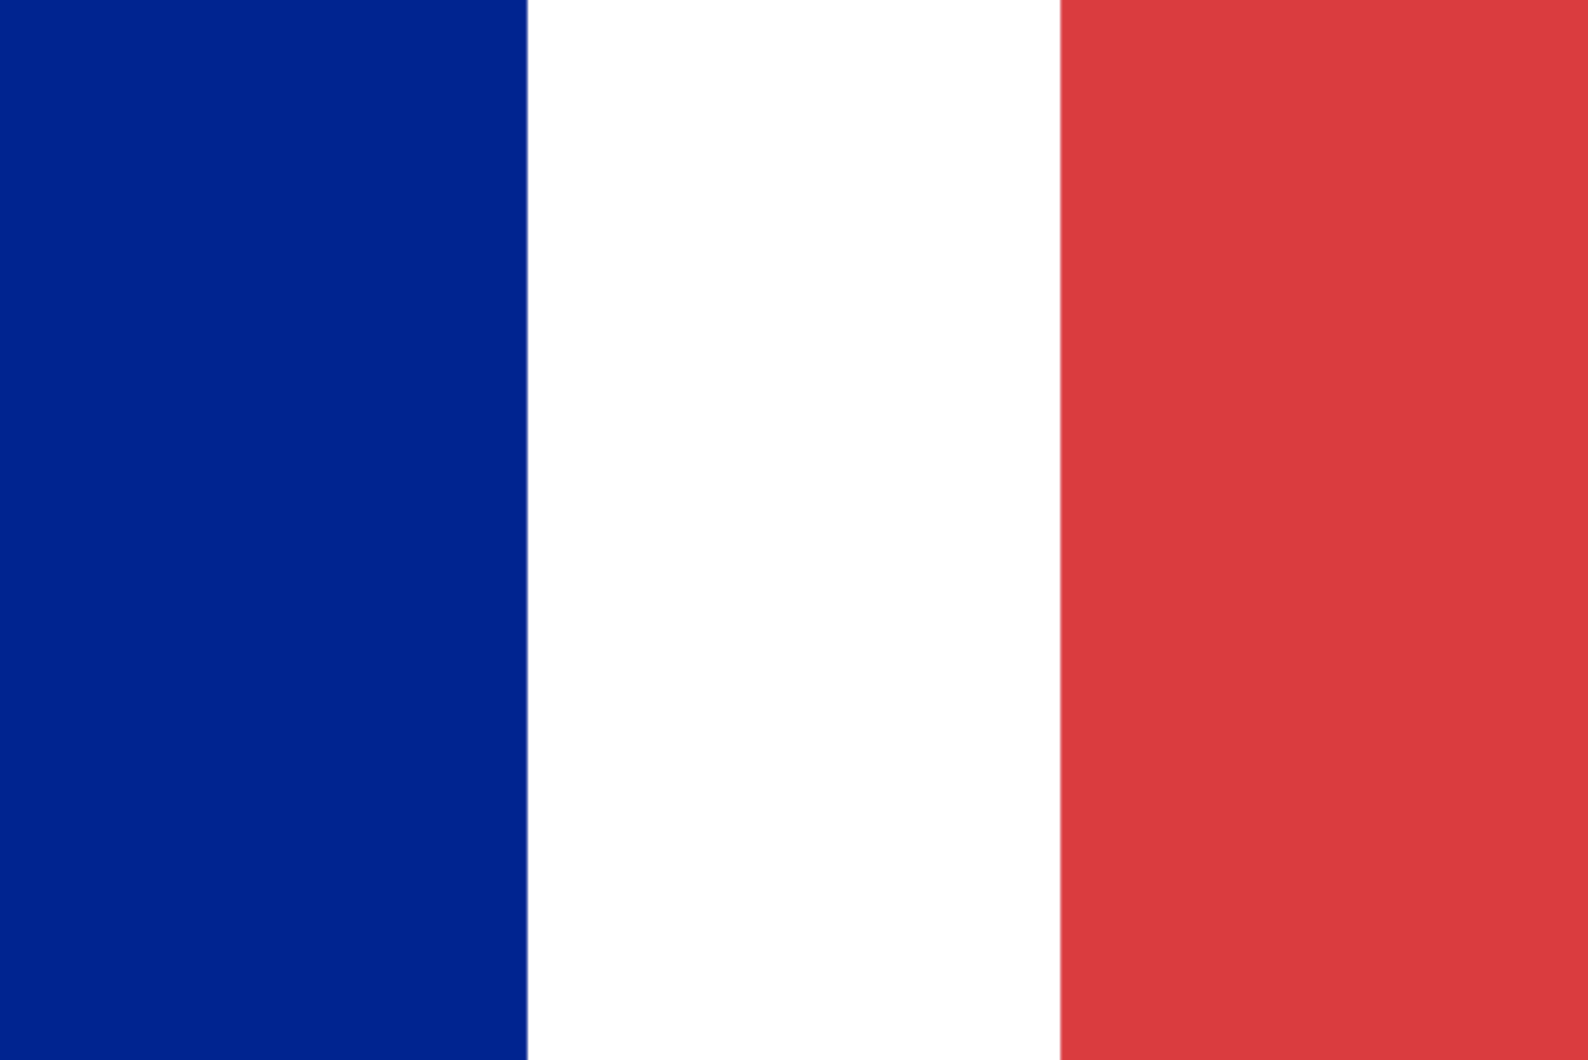 Σημαία της Γαλλίας